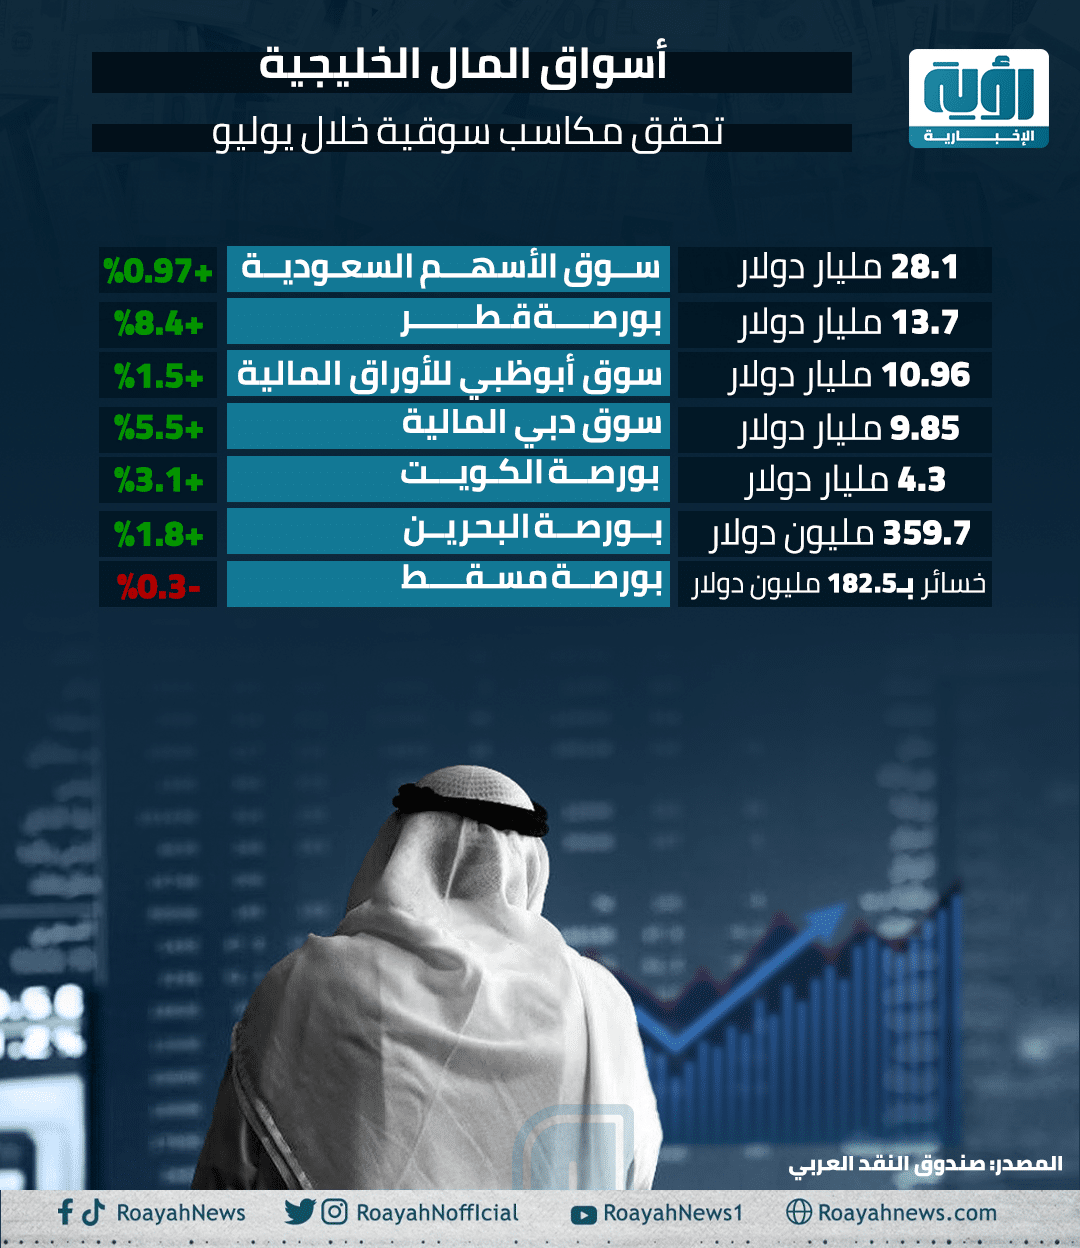 أسواق المال الخليجية تحقق مكاسب سوقية خلال يوليو